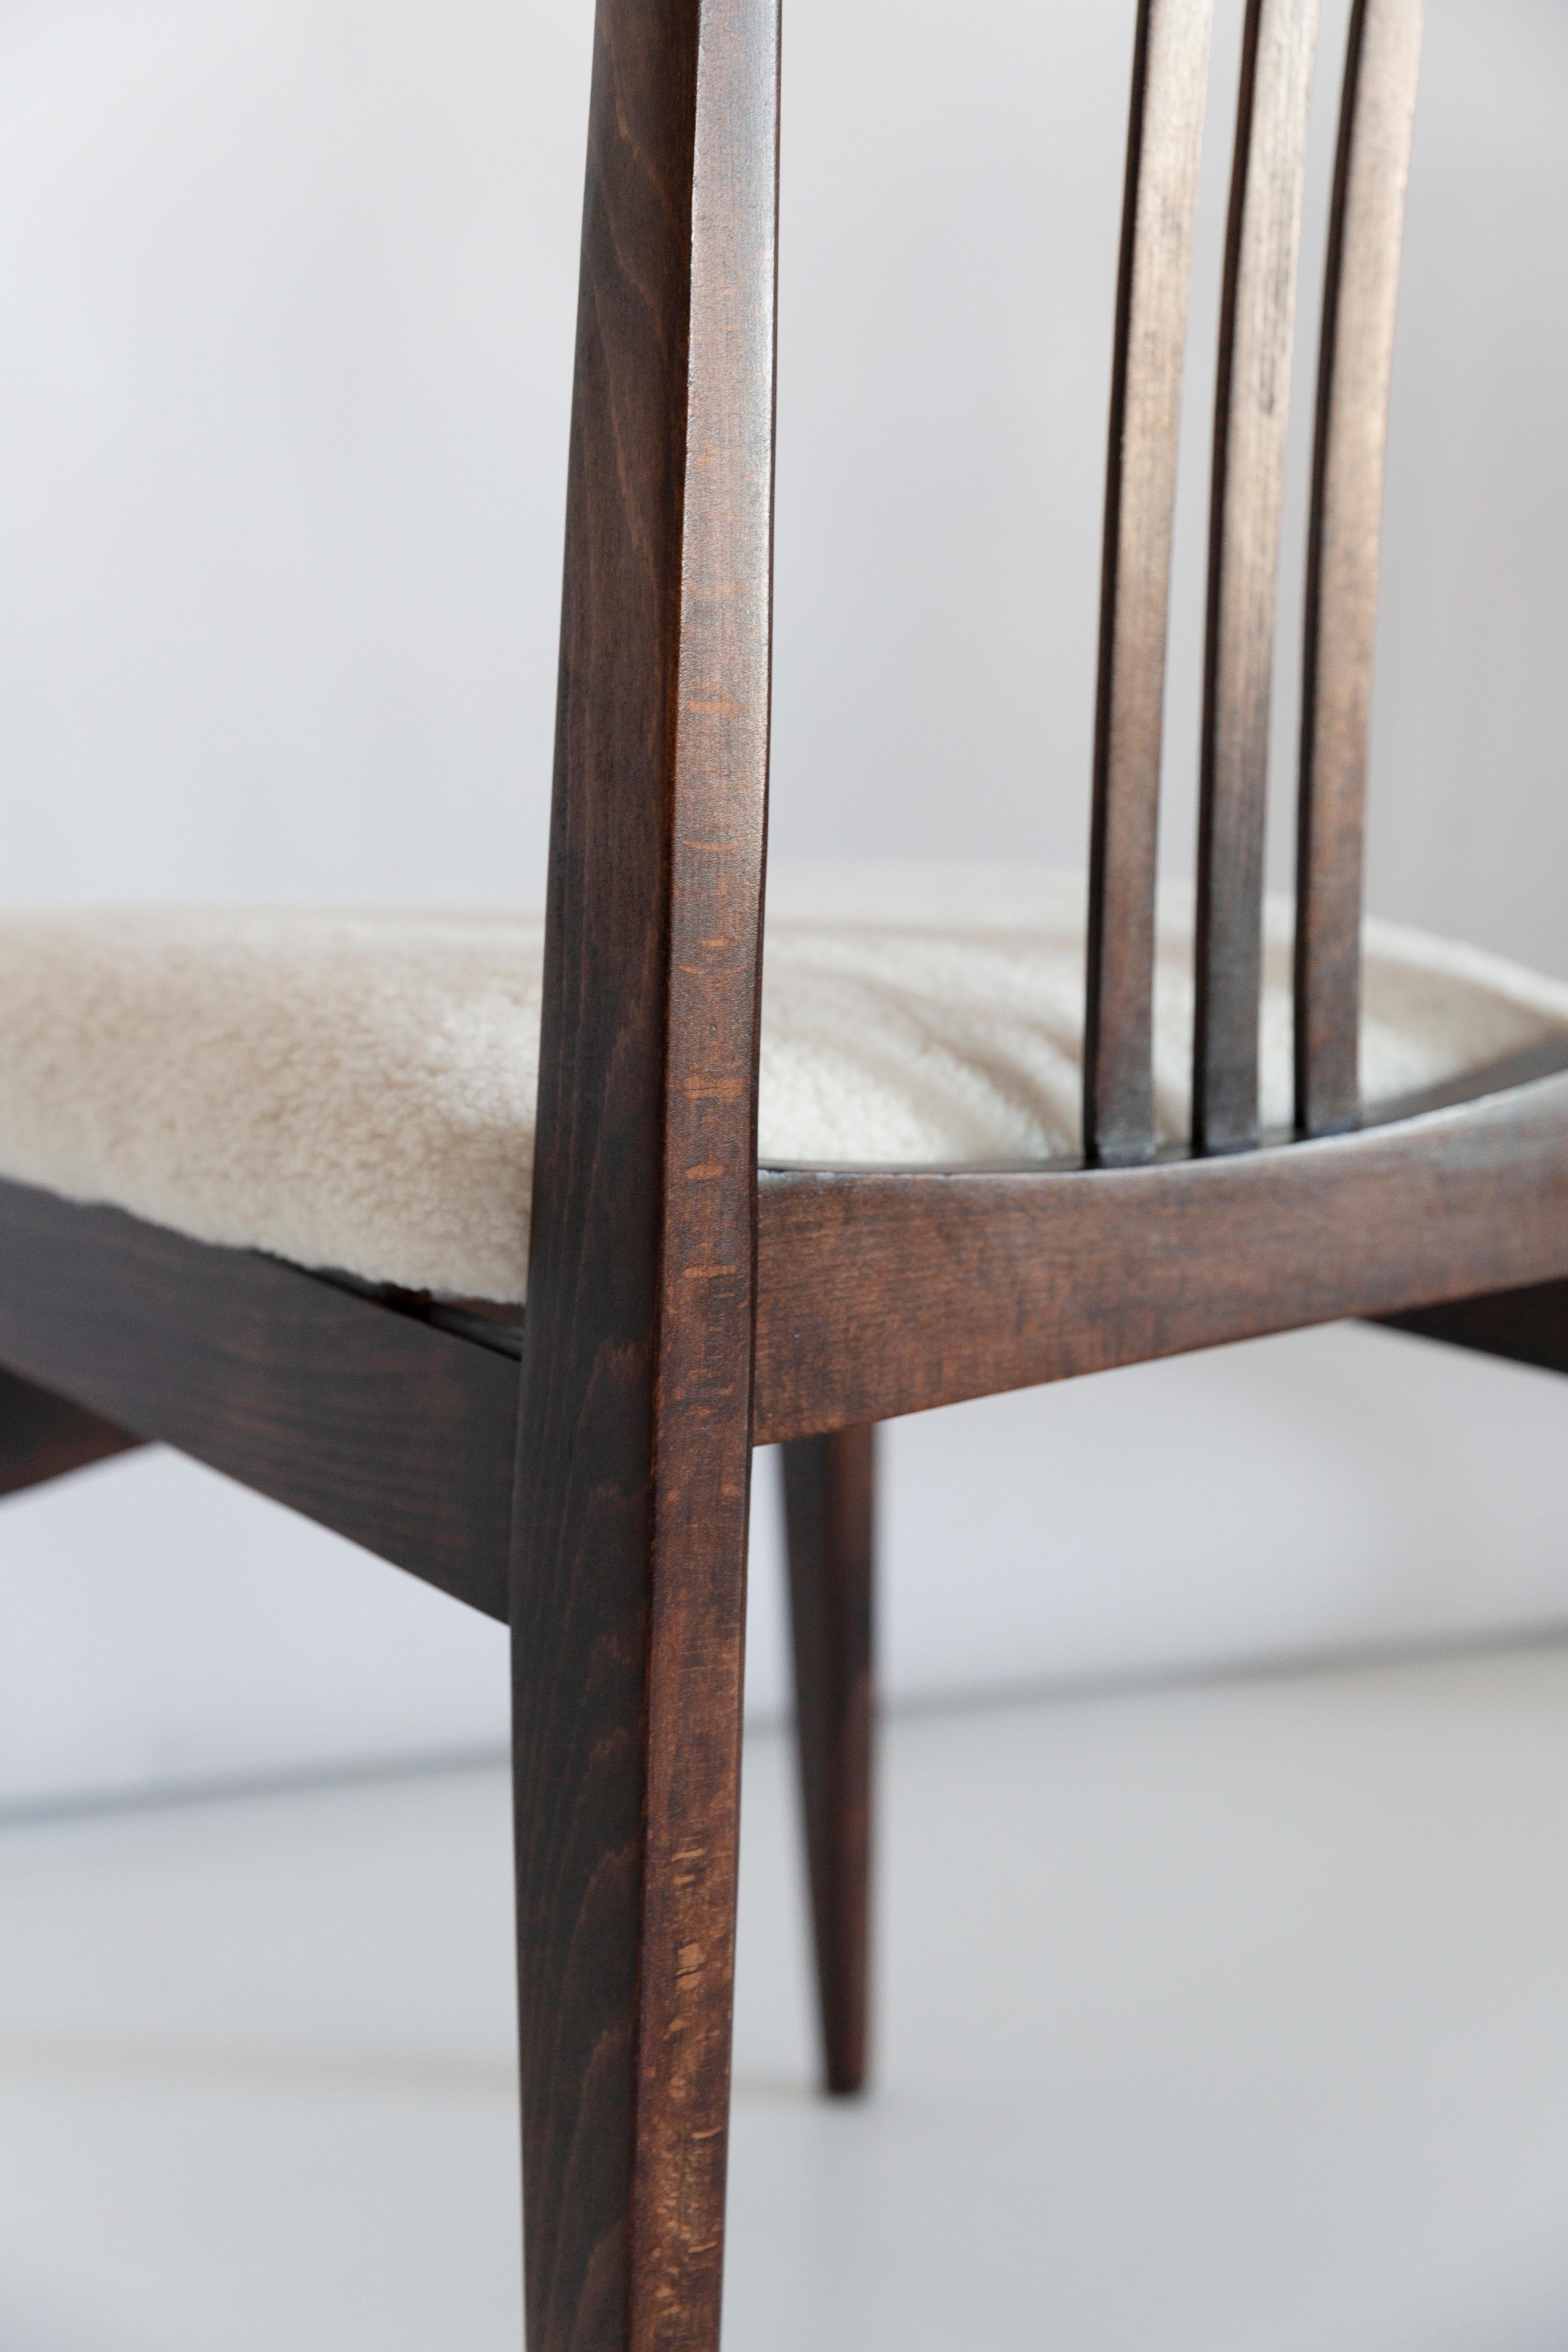 Une belle chaise en hêtre conçue par M. Zielinski, type 200 / 100B. Fabriqué par le Centre de l'industrie du meuble d'Opole à la fin des années 1960 en Pologne. La chaise a subi une rénovation complète de la menuiserie et de la tapisserie. Sièges